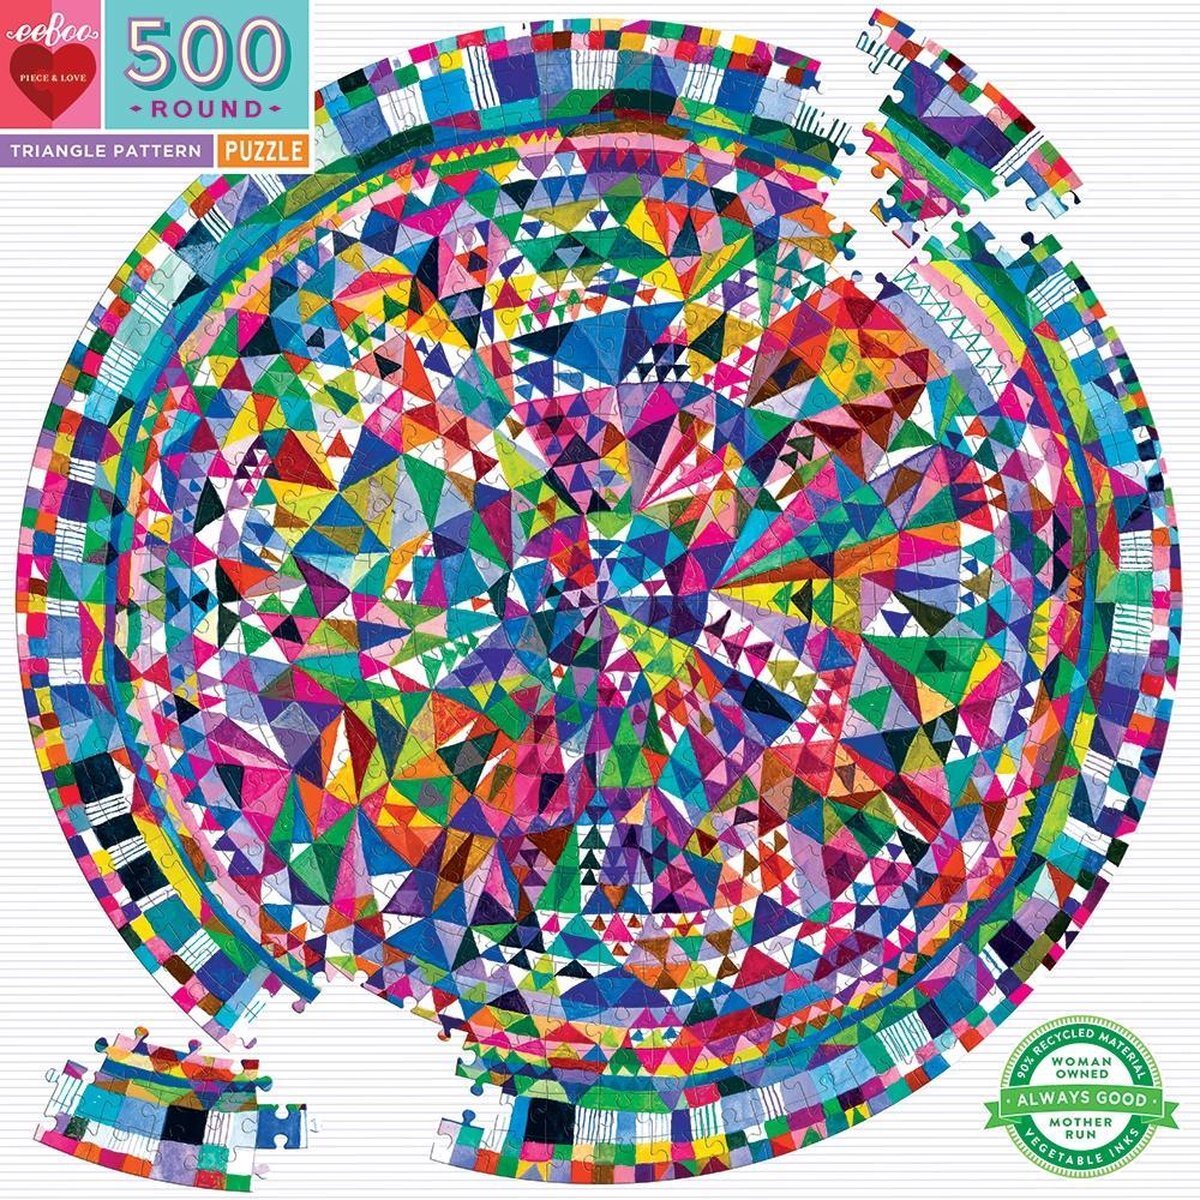 Eeboo Puzzel - triangle pattern - 500 stukjes - 58.5 rond